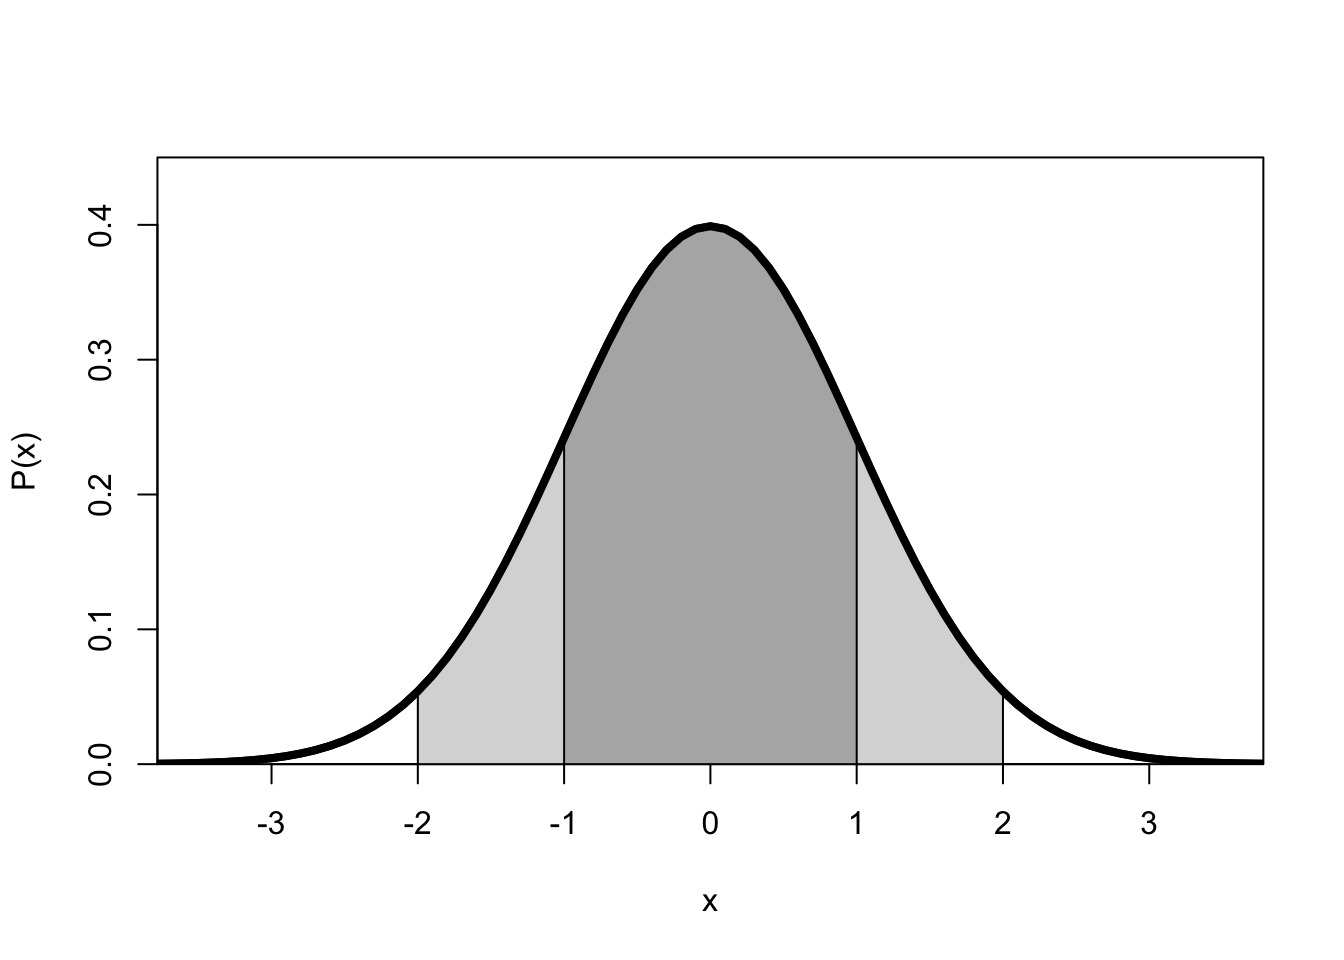 Normale kansverdeling van een variabele x met gemiddelde 0 en standaarddeviatie 1.